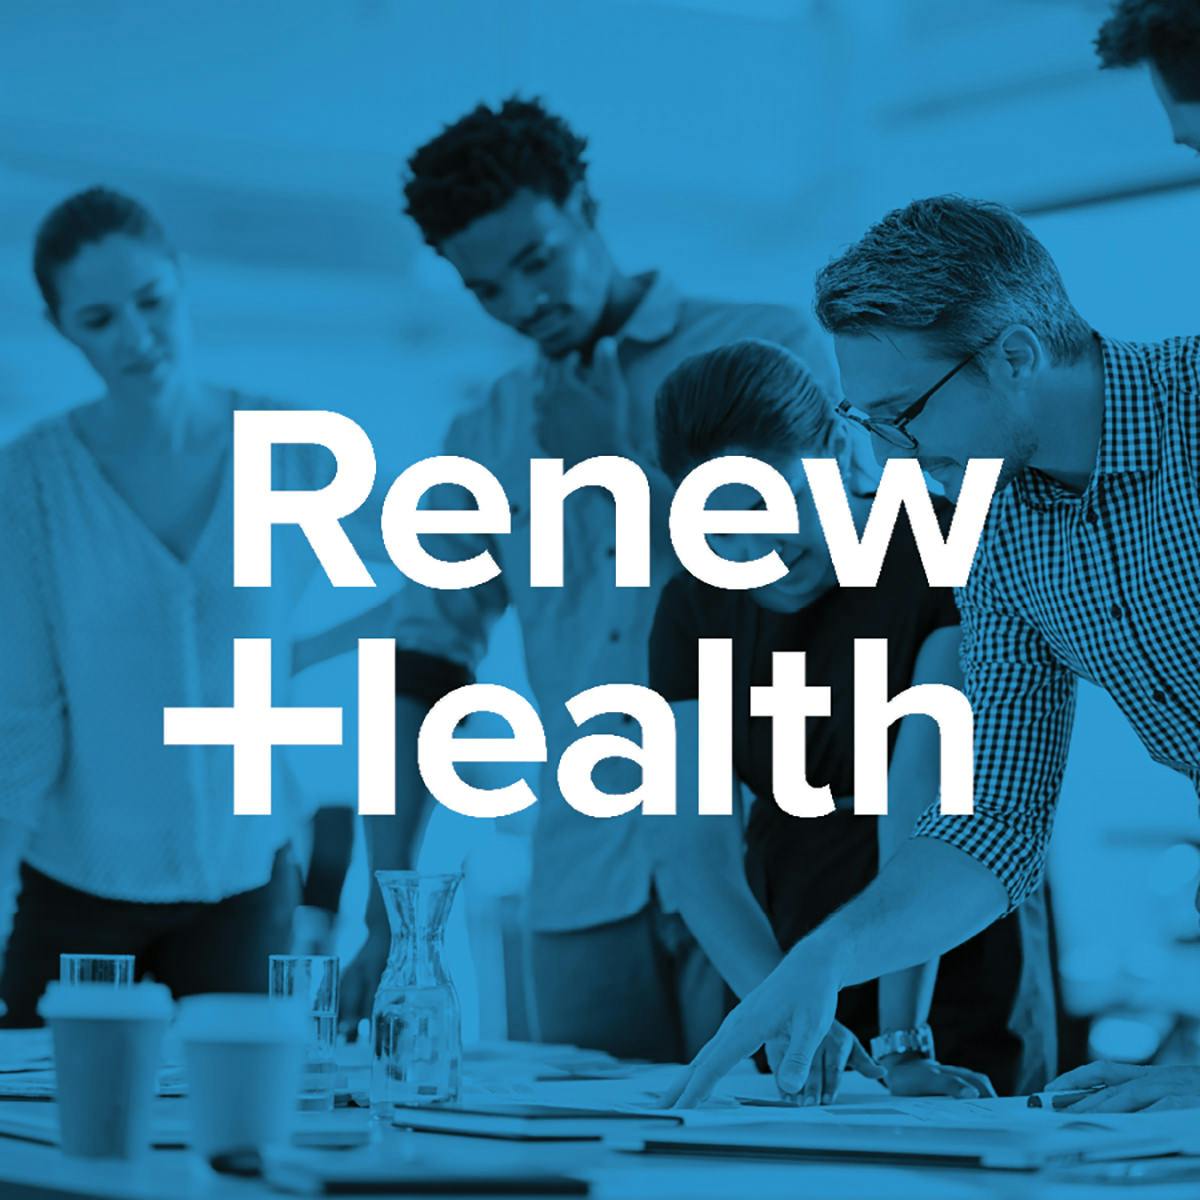 Event: Renew Health: Newfront's Employee Benefits Captive